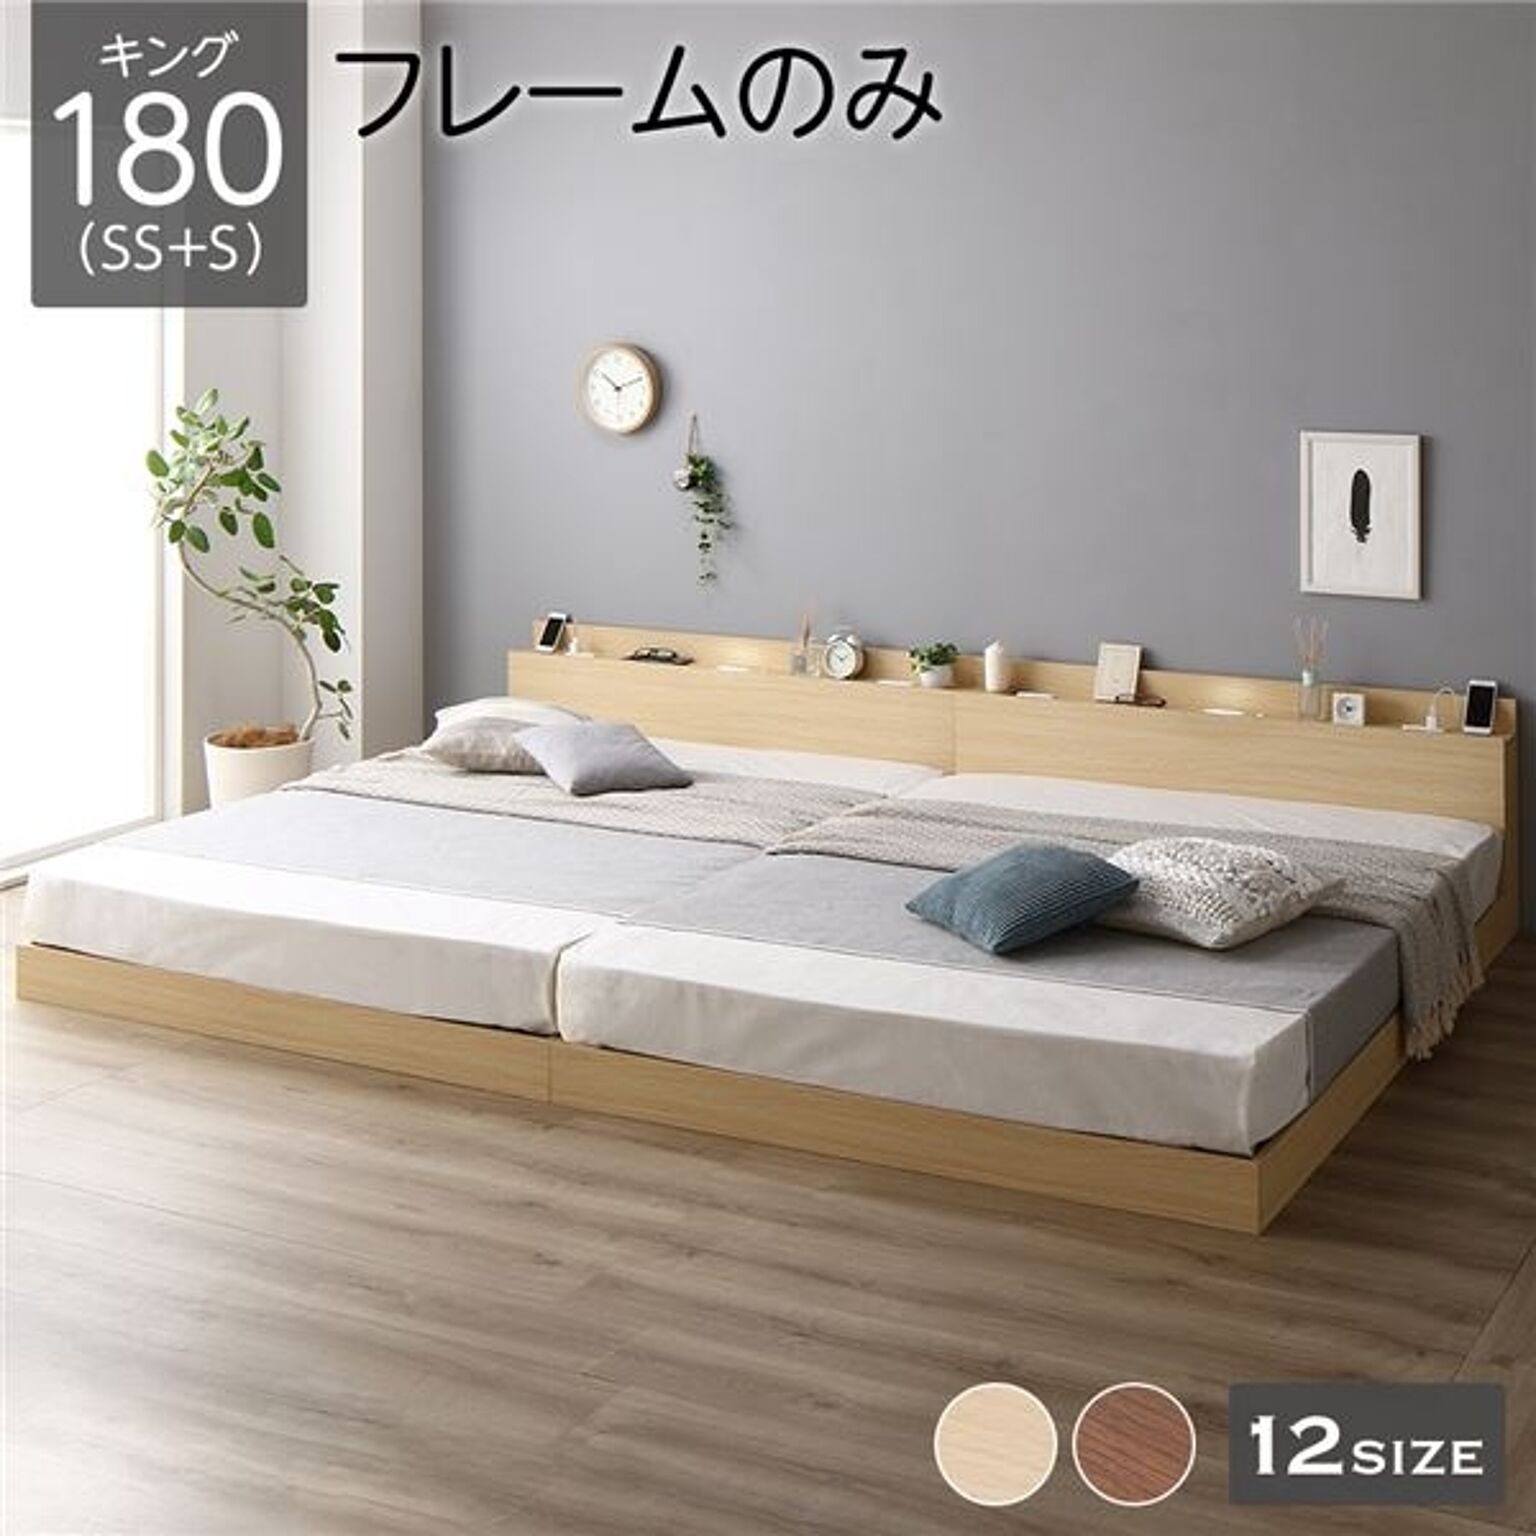 ベッド 低床 連結 ロータイプ すのこ 木製 LED照明付き 棚付き 宮付き コンセント付き シンプル モダン ナチュラル キングSS+S  ベッドフレームのみ